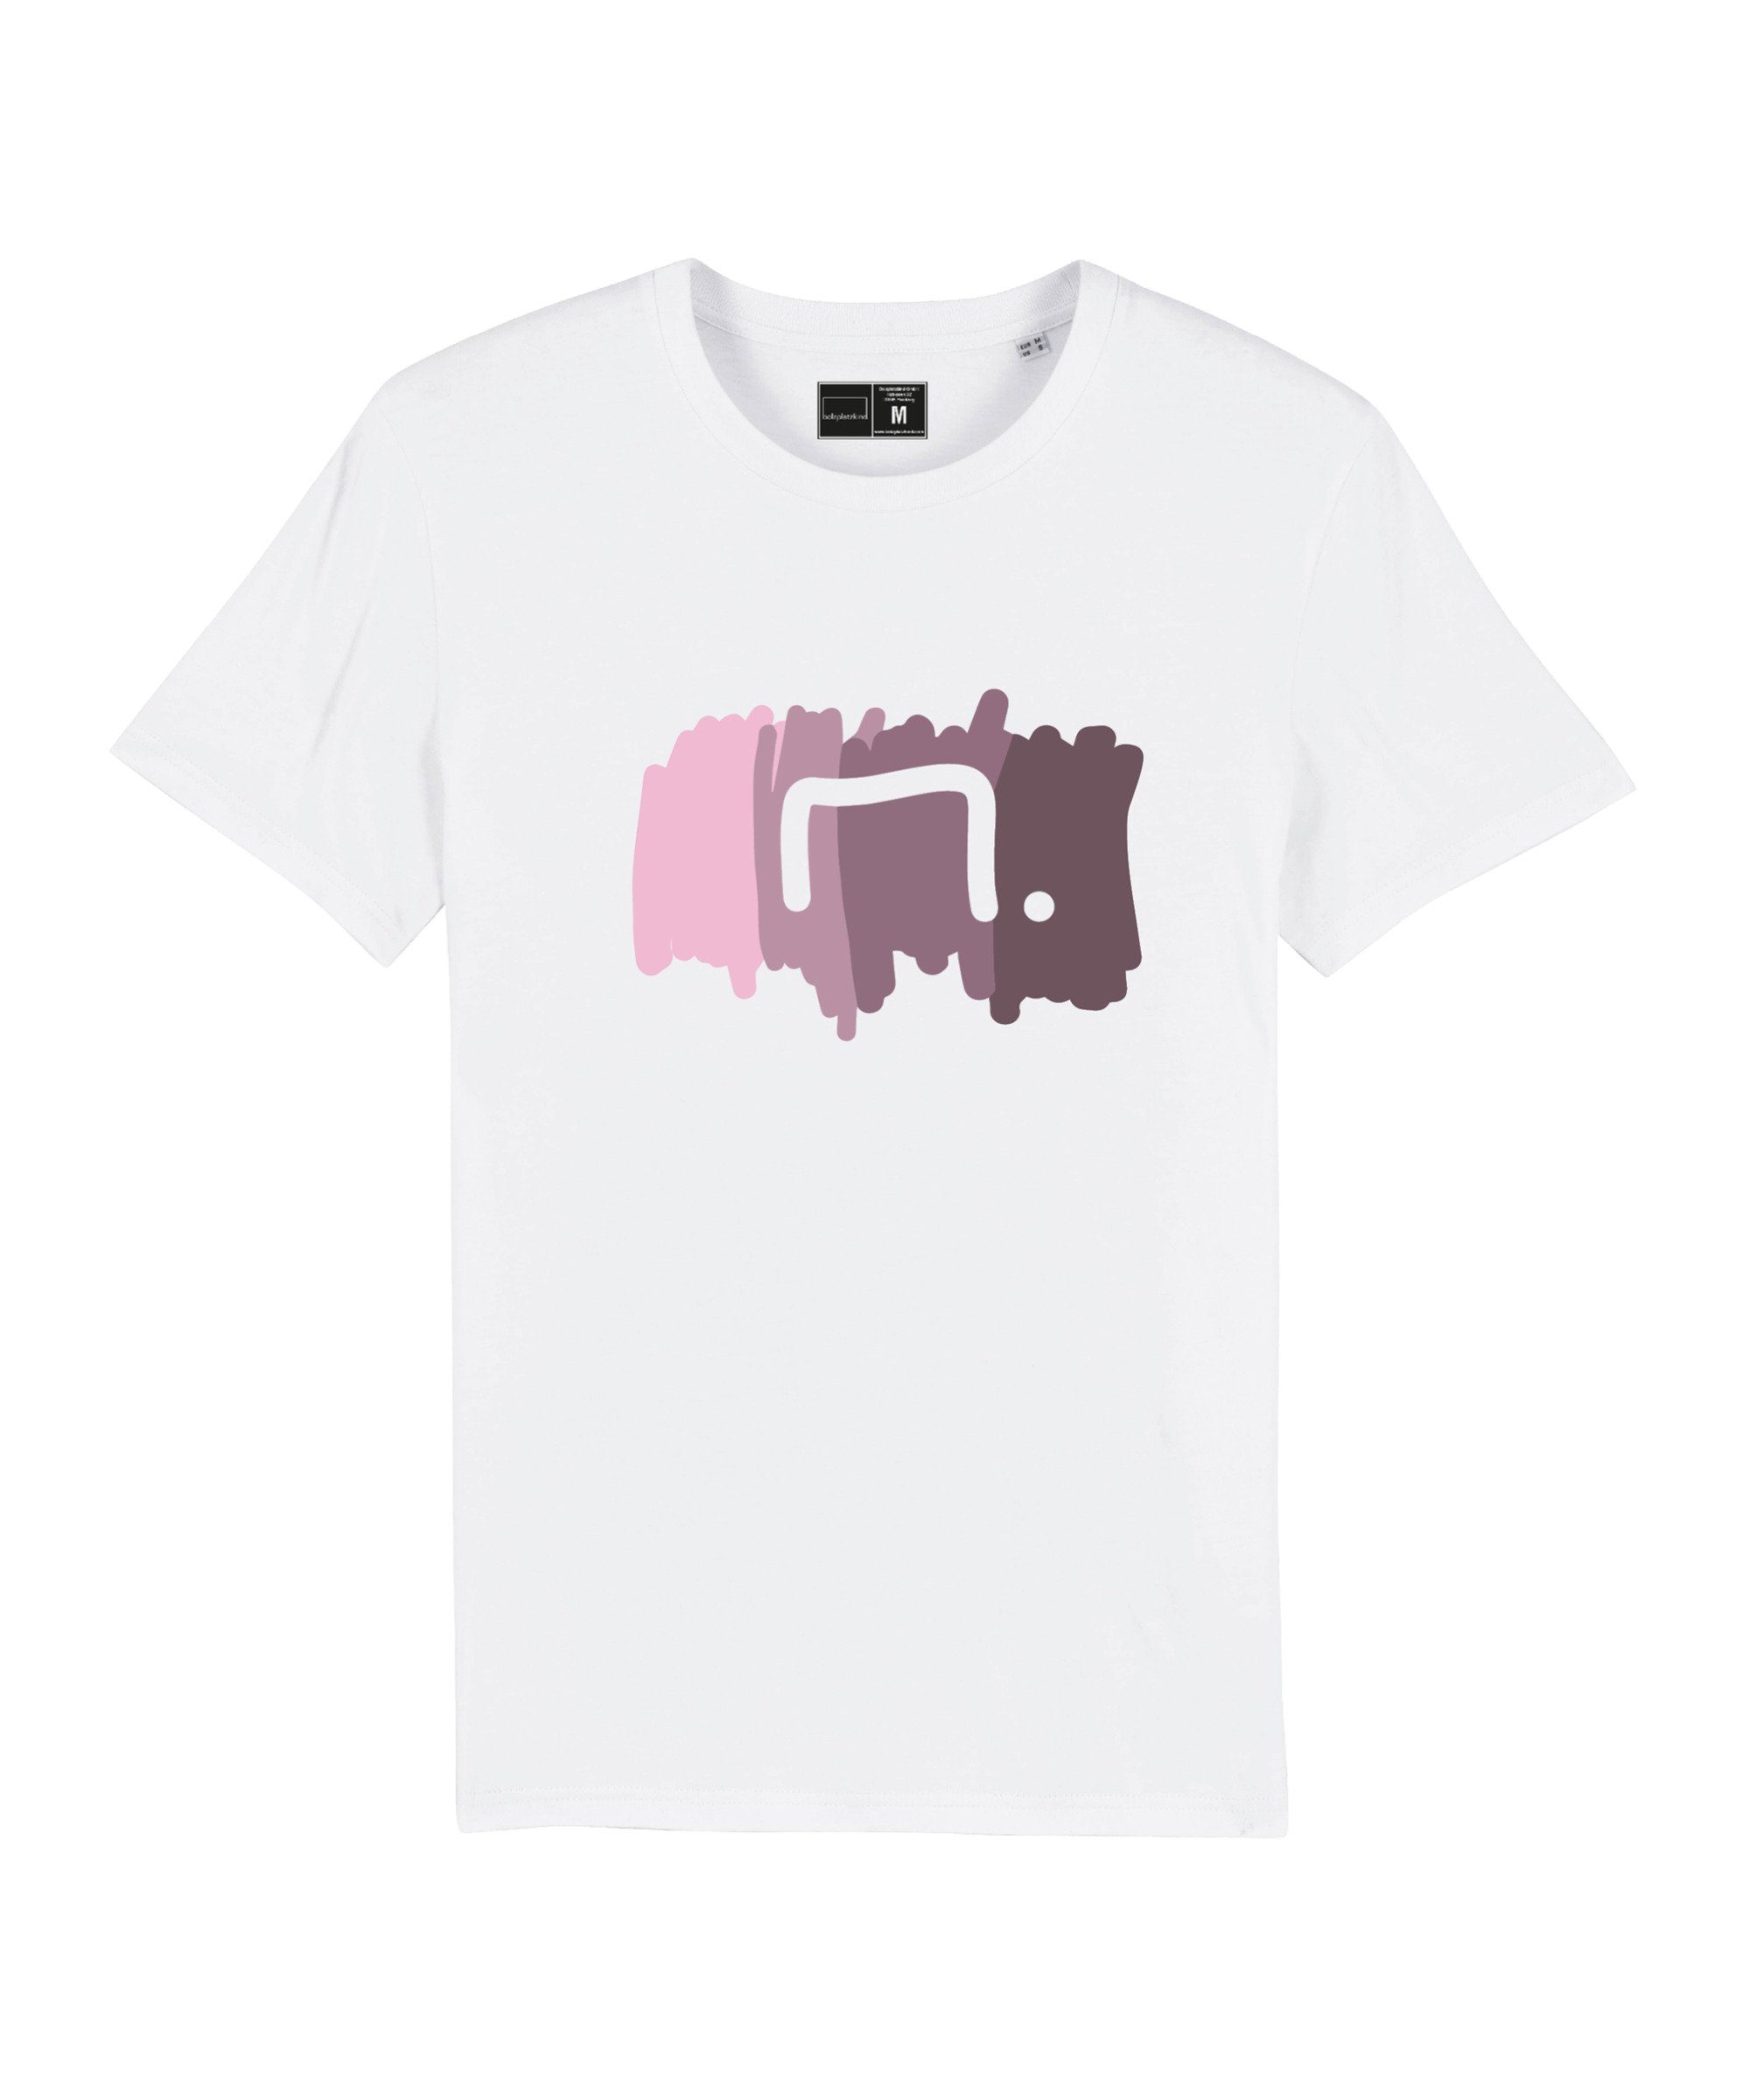 Bolzplatzkind T-Shirt "Free" T-Shirt Nachhaltiges Produkt weissrosa